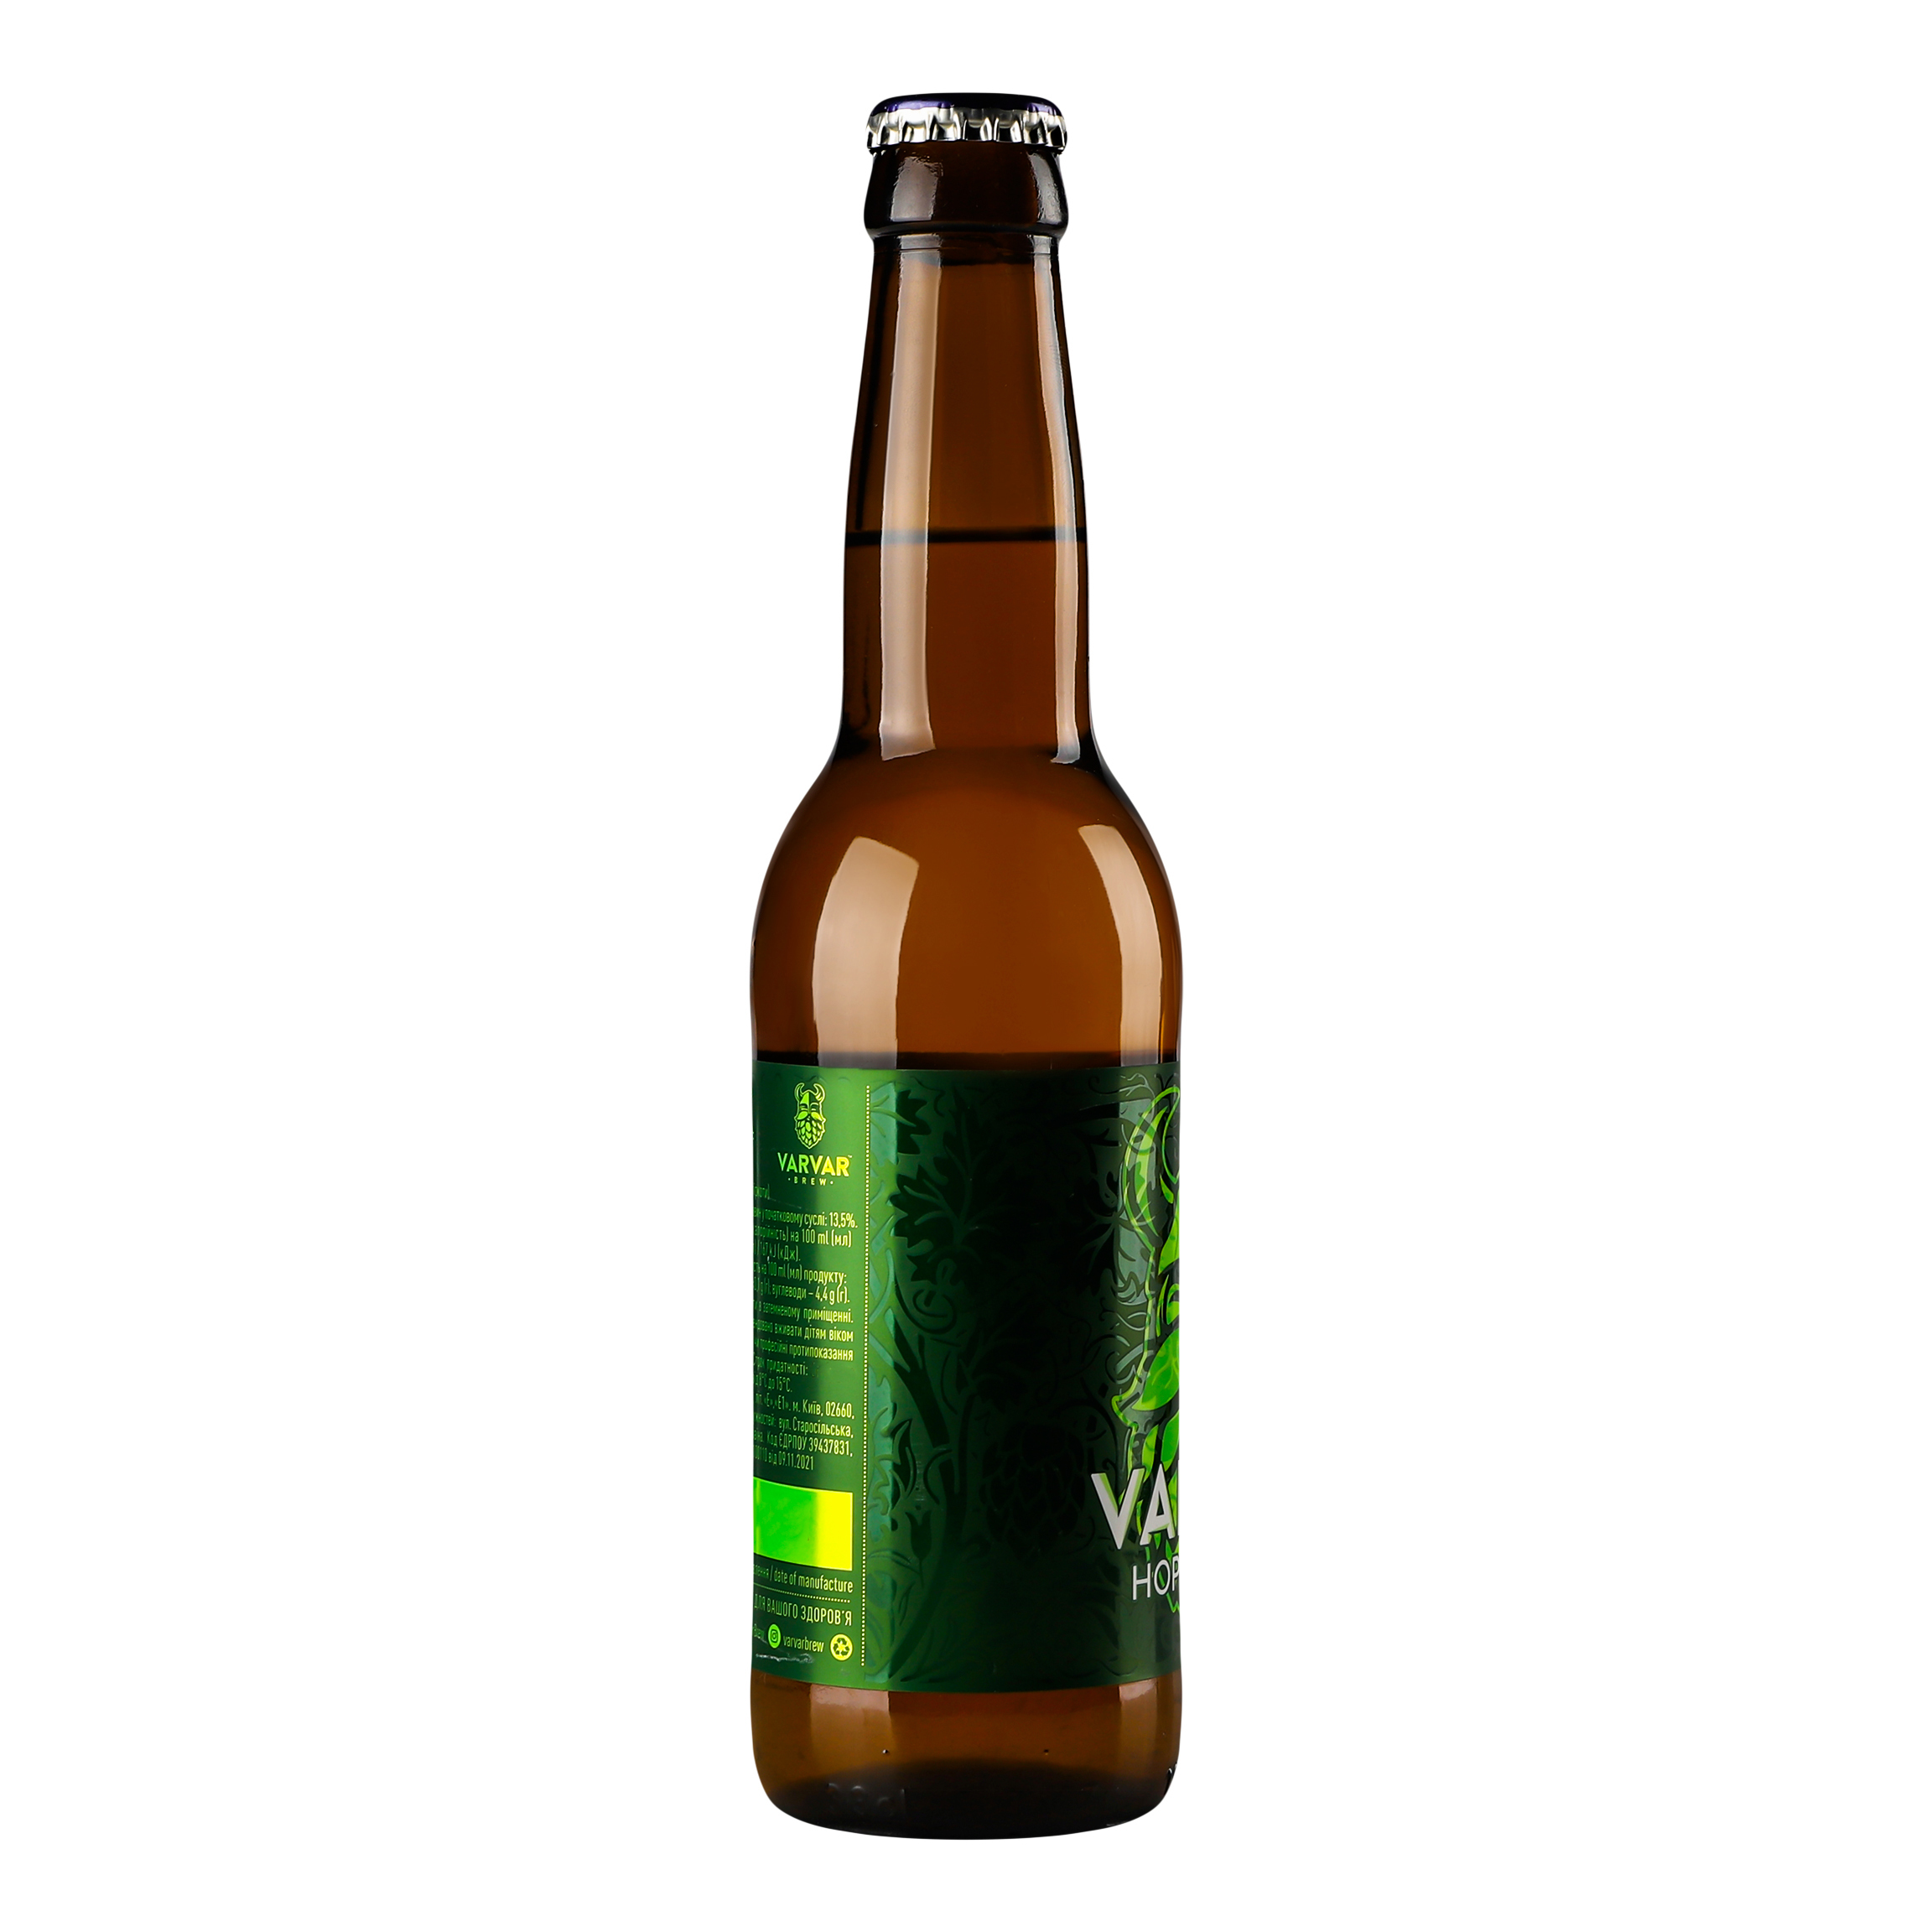 Пиво Varvar Hoppy Lager, светлое, нефильтрованое, 5,6%, 0,33 л - фото 3